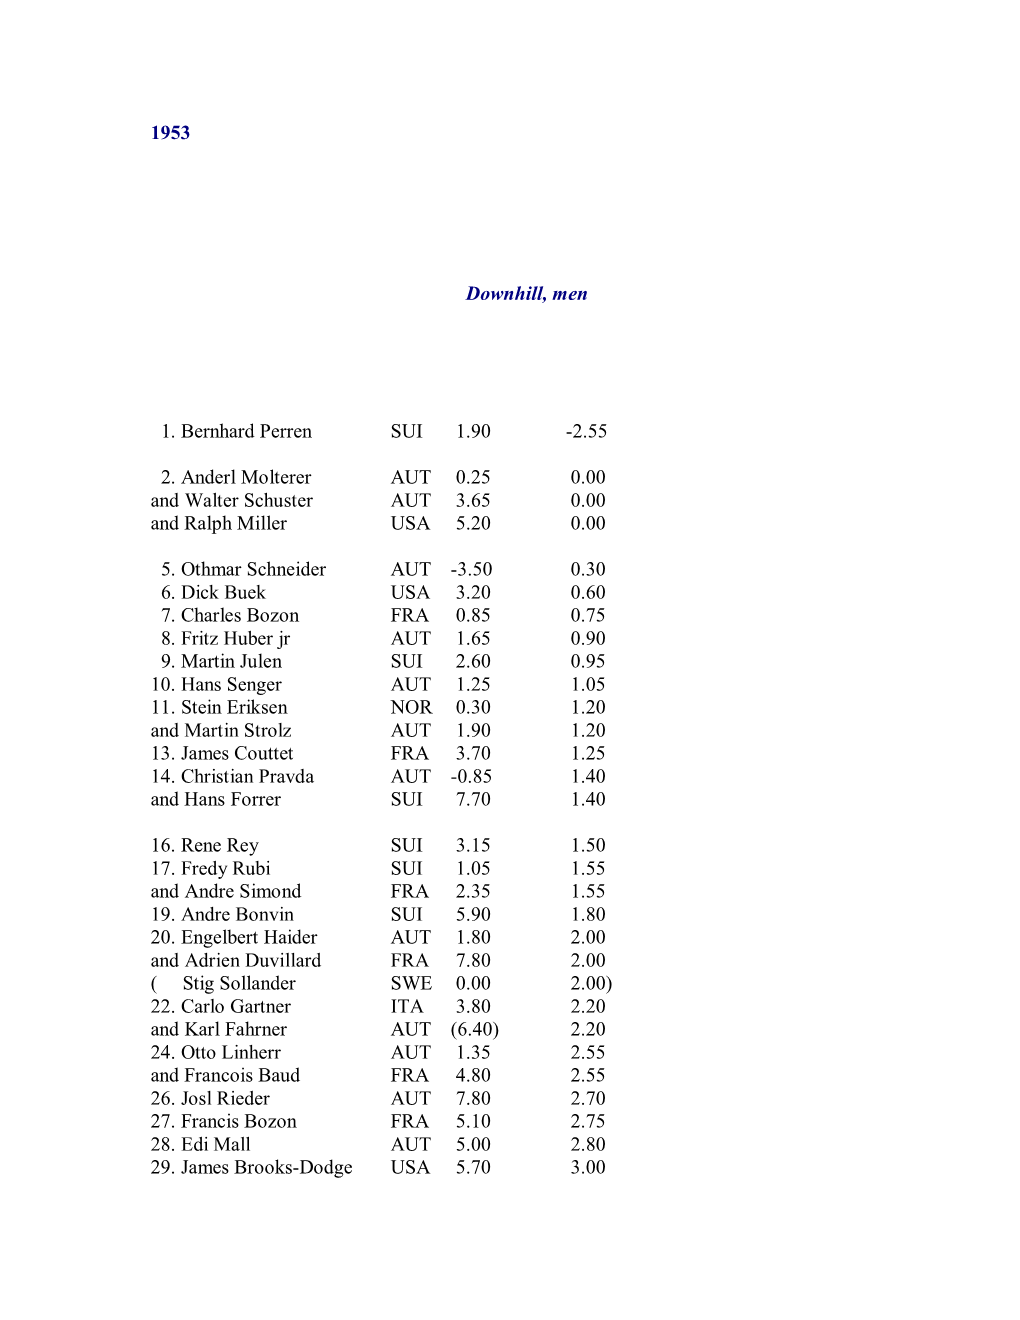 1953 Downhill, Men 1. Bernhard Perren SUI 1.90 -2.55 2. Anderl